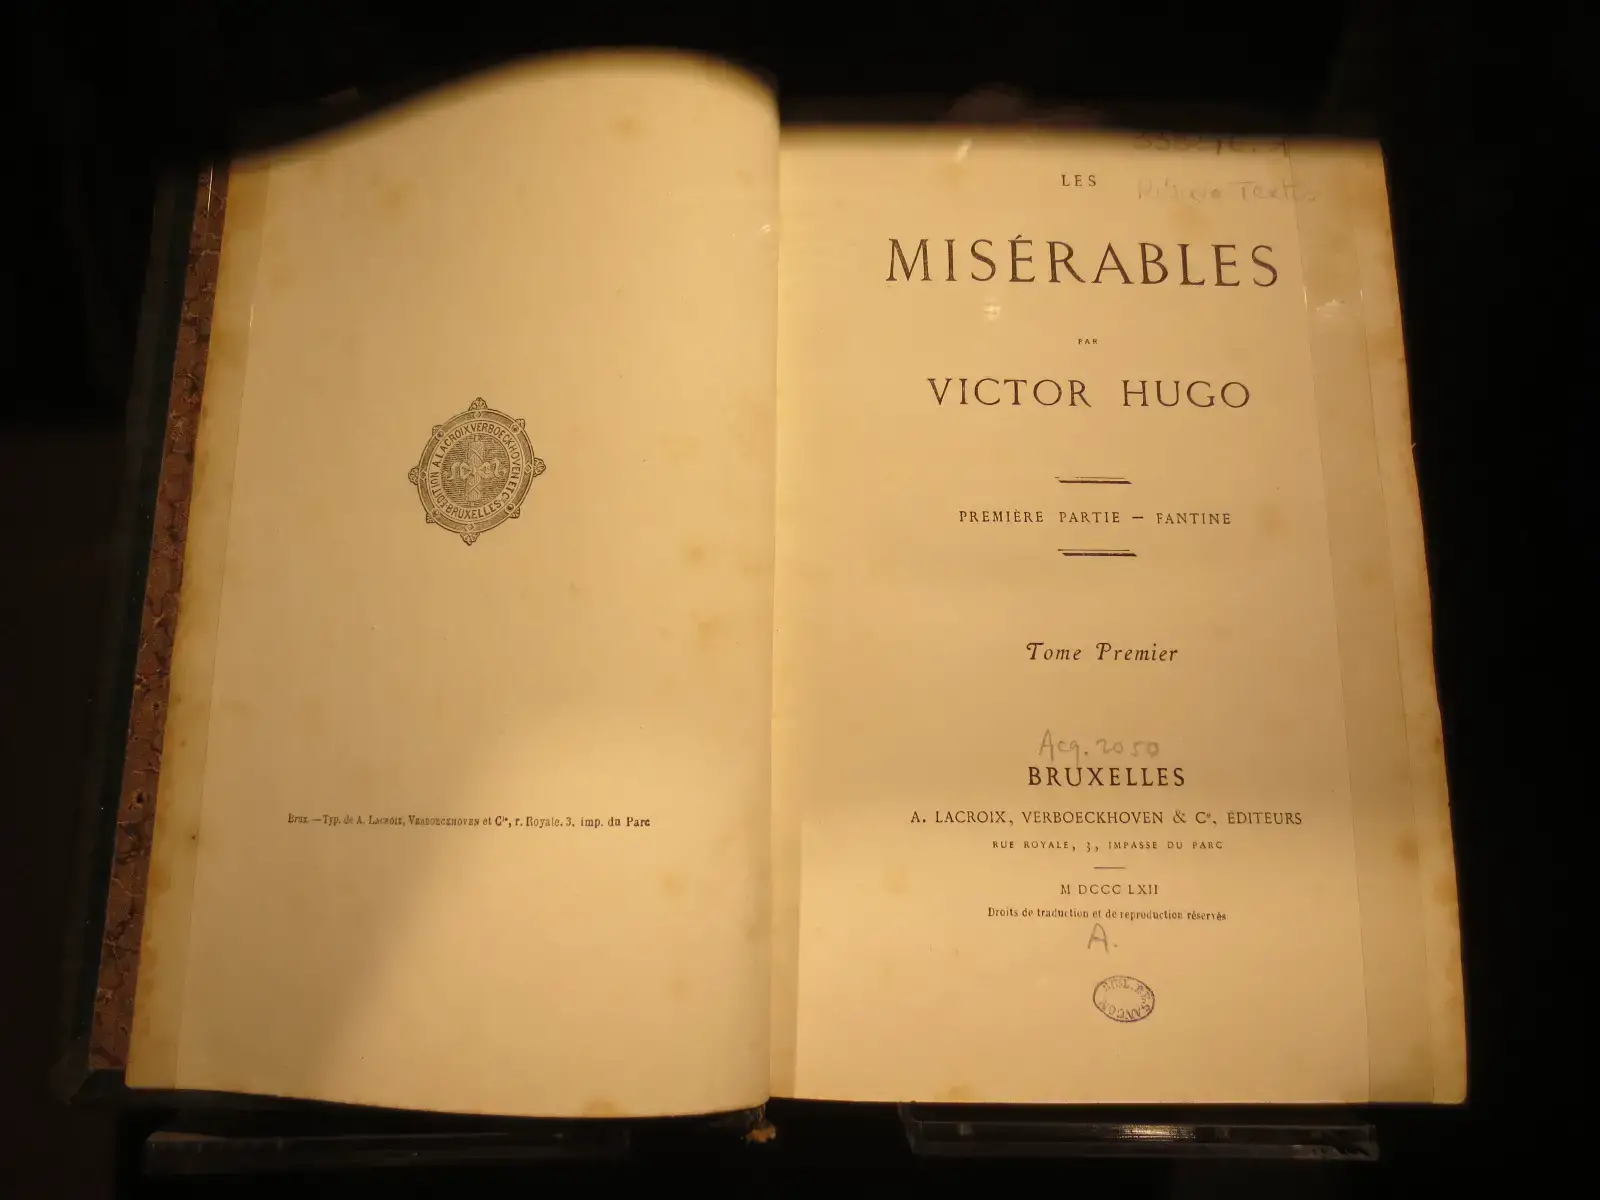 La vida de Victor Hugo, un titán de la literatura francesa